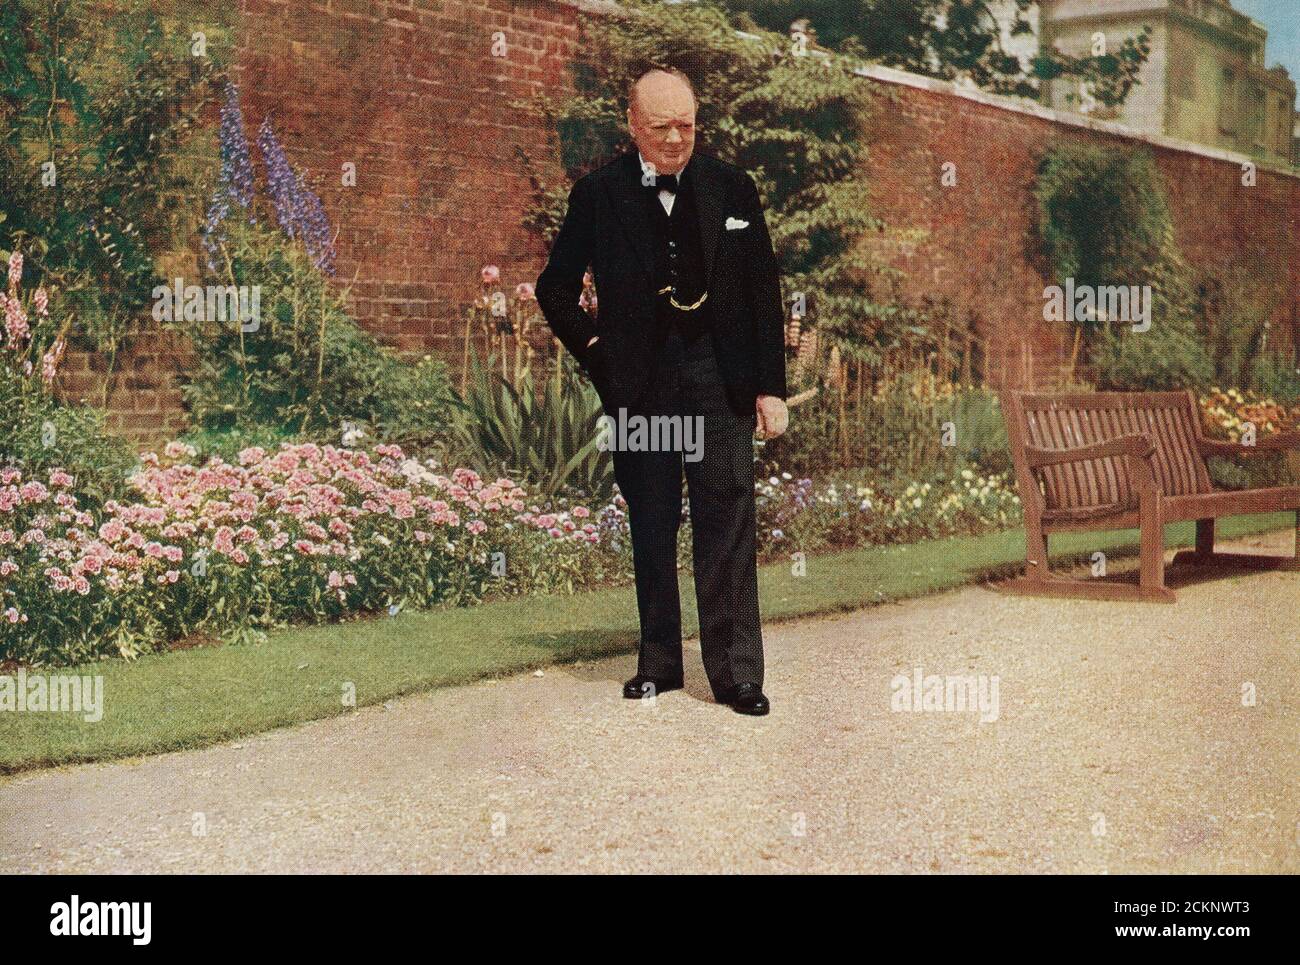 Winston Churchill dans le jardin du 10 Downing Street, pendant la deuxième Guerre mondiale. Sir Winston Leonard Spencer-Churchill, 1874 – 1965. Politicien britannique, officier de l'armée, écrivain et deux fois Premier ministre du Royaume-Uni. Banque D'Images